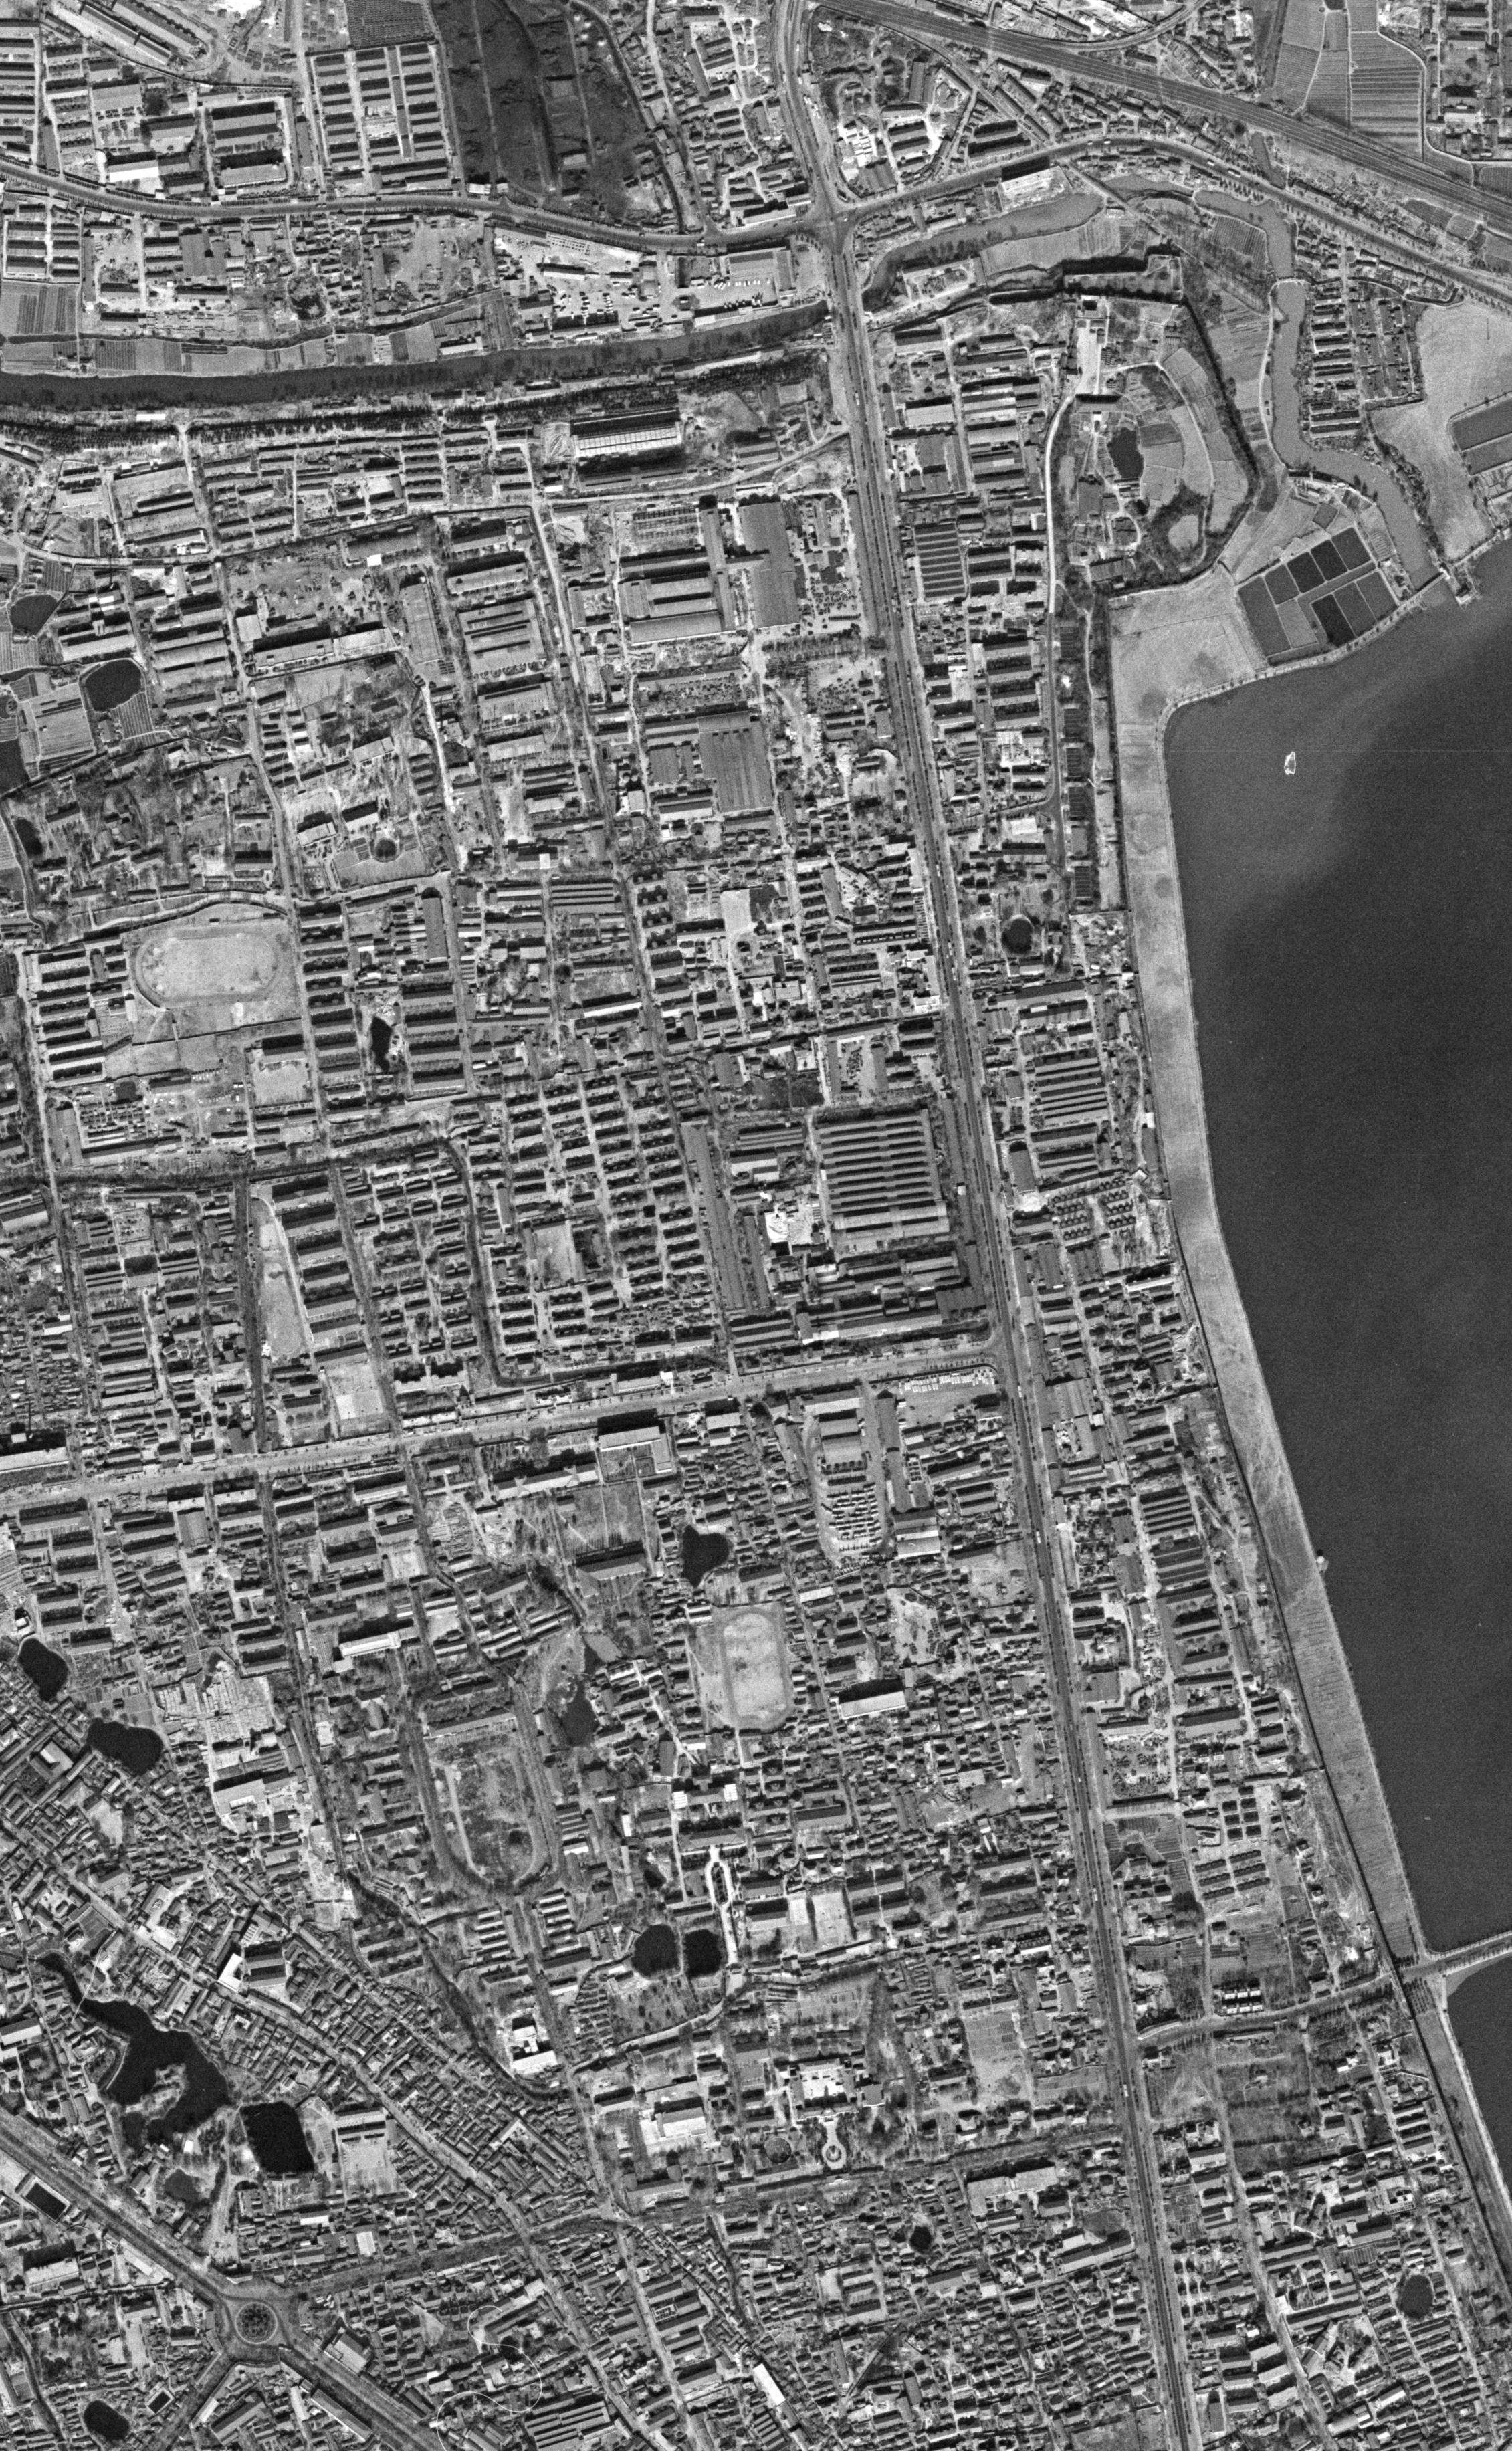 锁眼侦察卫星1973年拍摄 南京市玄武湖周边 清晰度感人